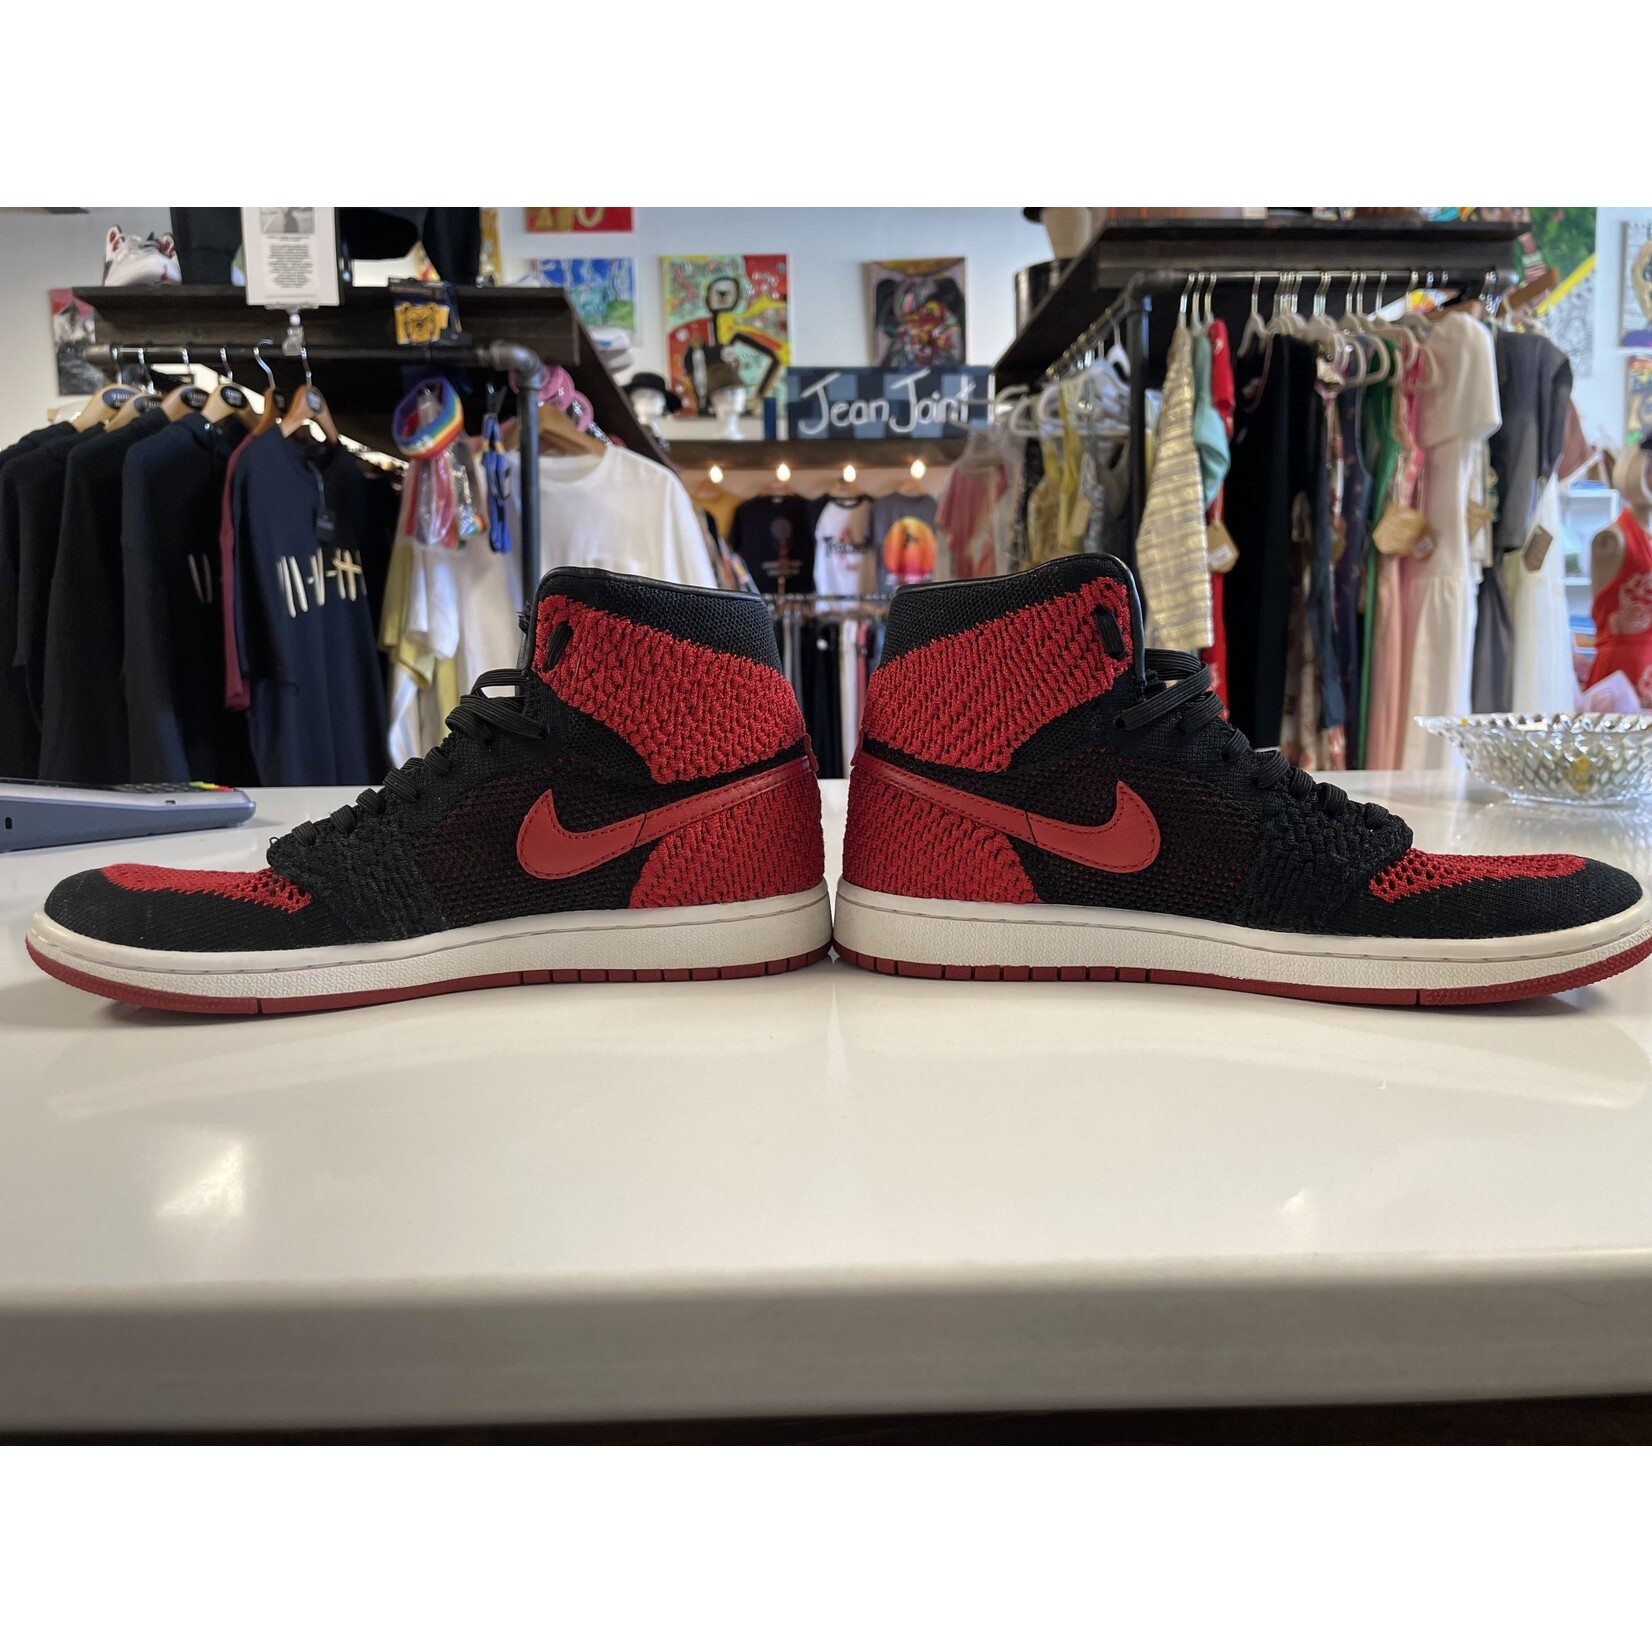 Nike, Jordan 1, Flyknit, Red, Black, 5.5 Youth